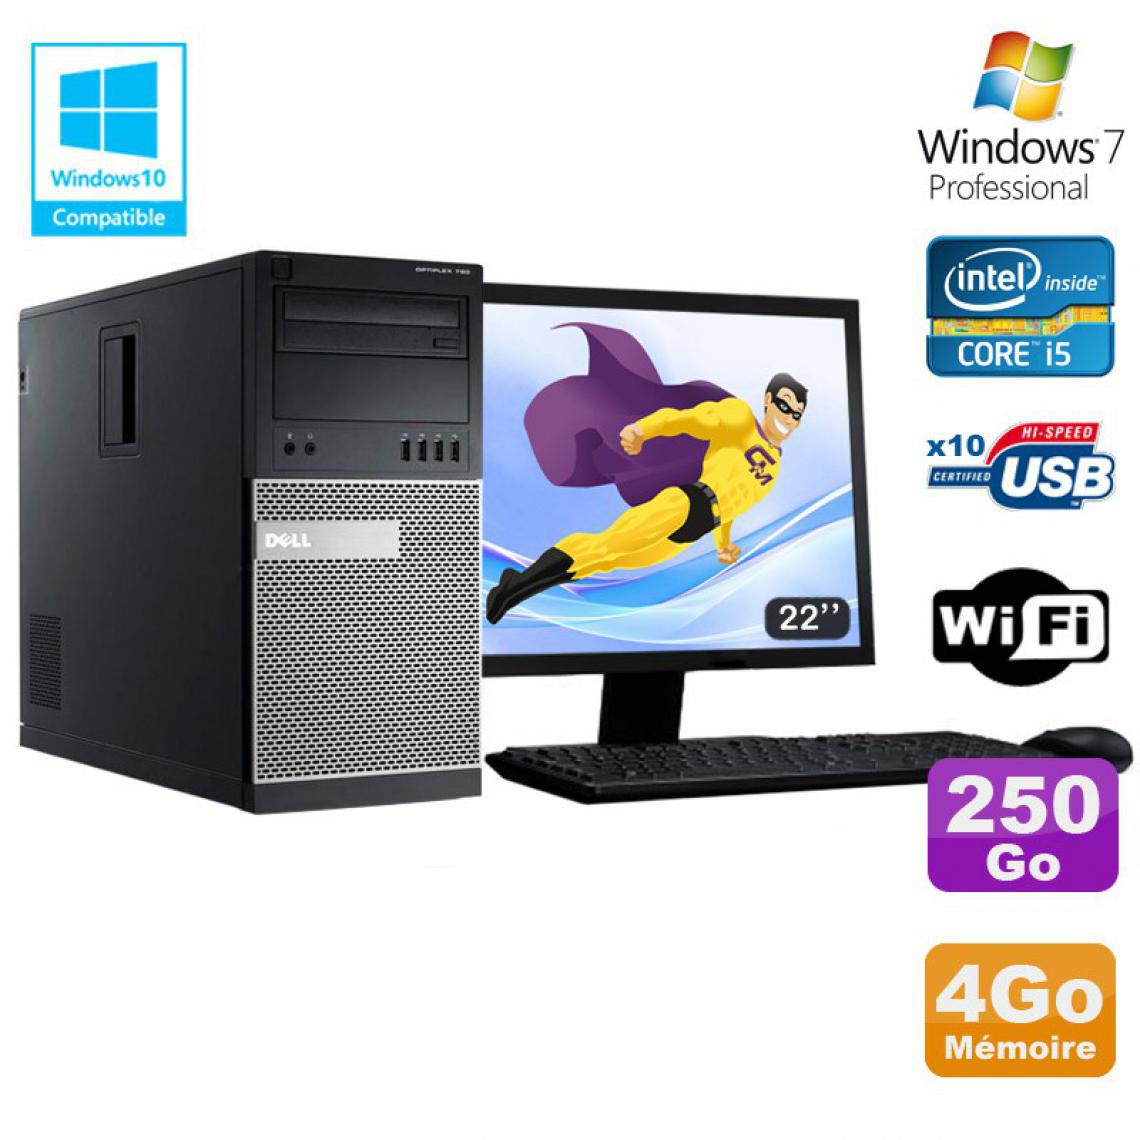 Dell - Lot PC Tour Dell 7010 Core I5-3470 3.2Ghz 4Go 250Go DVD WIFI Win 7 + Ecran 22 - PC Fixe